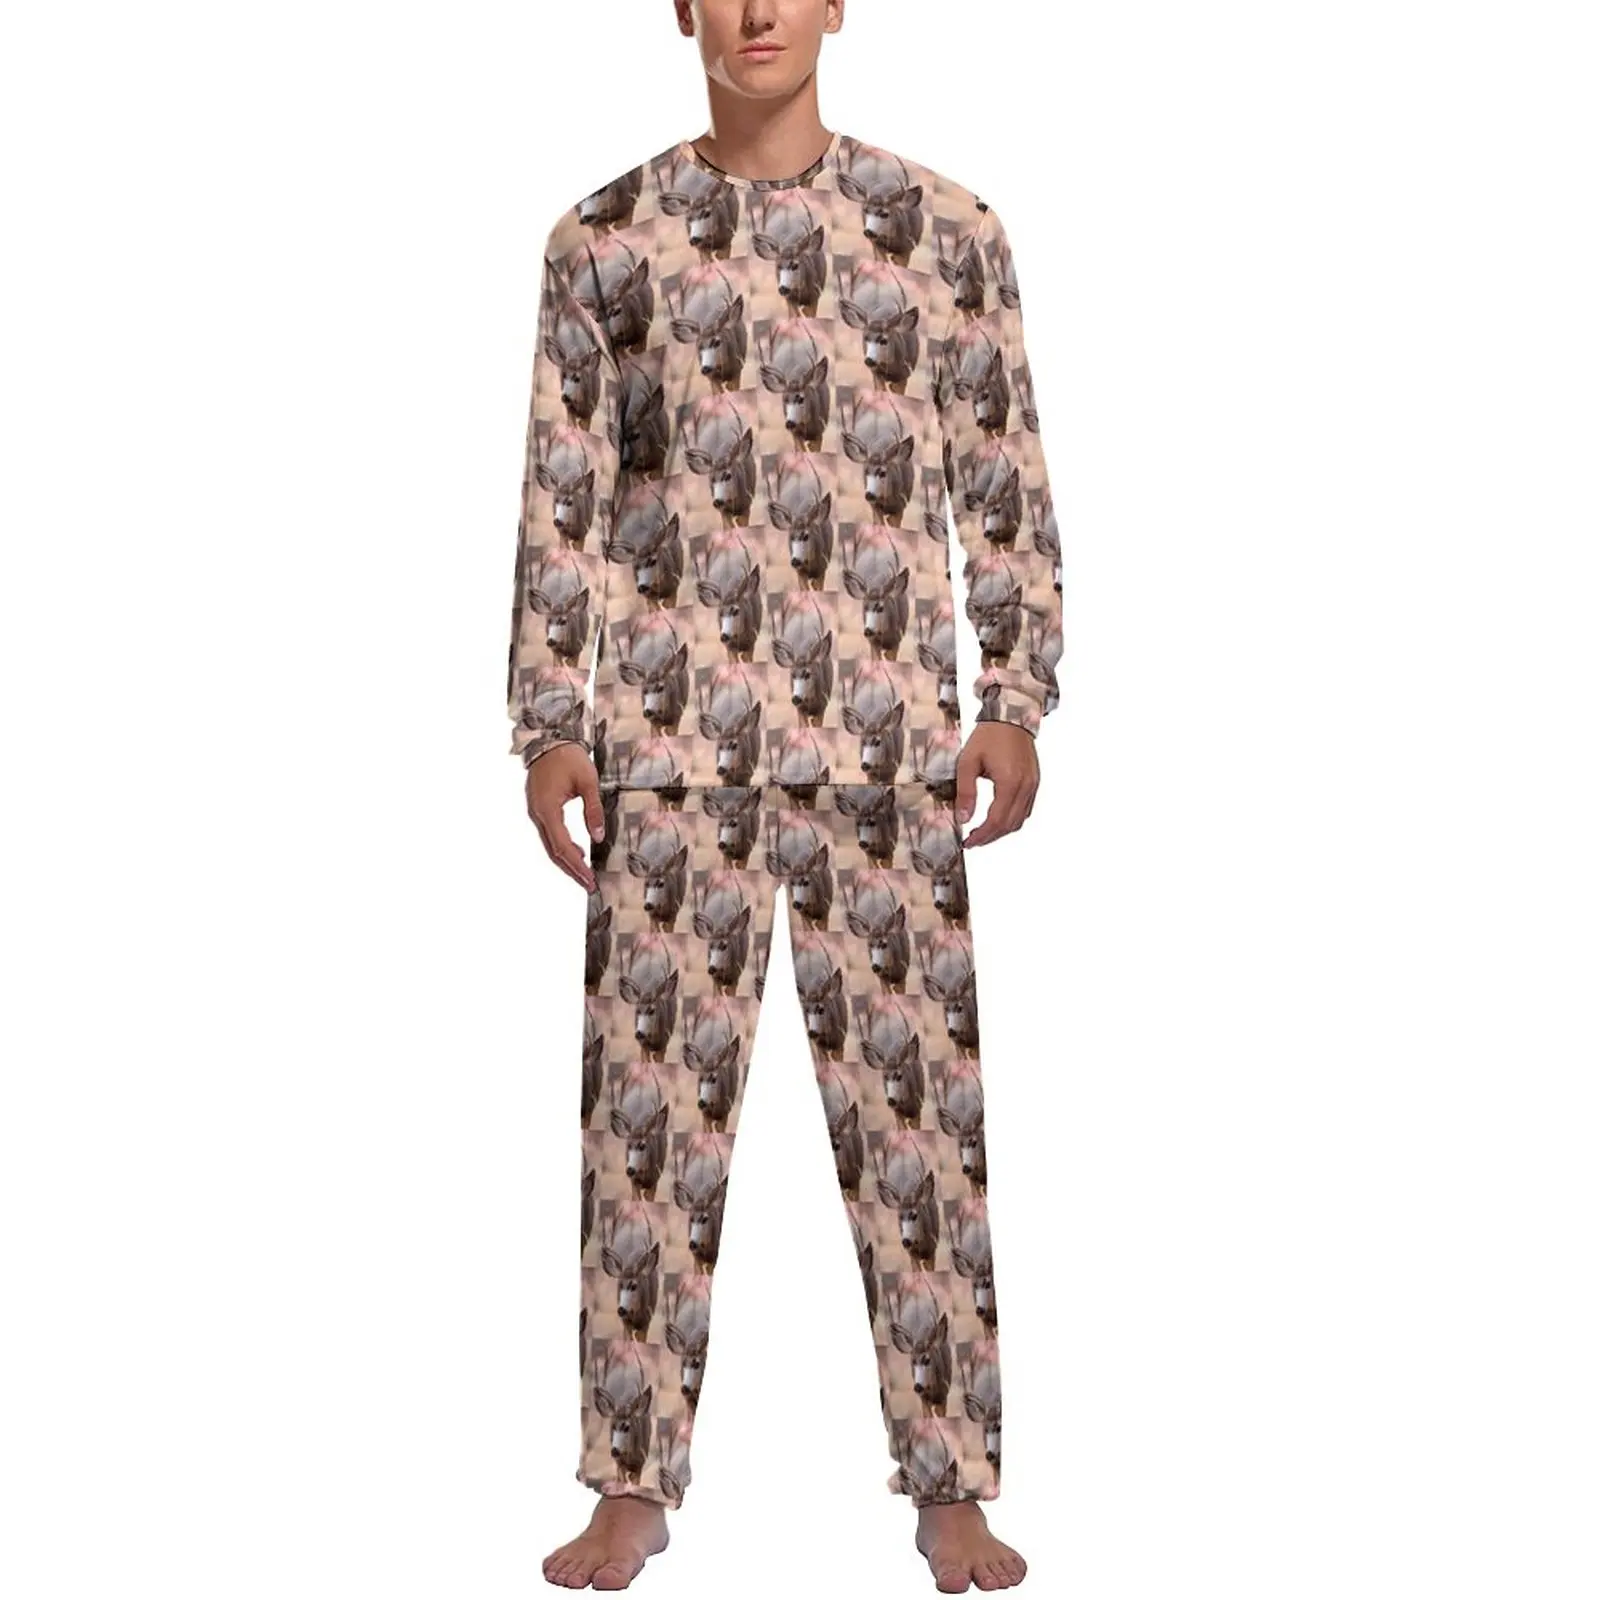 

Mule Deer Antlers Pajamas Spring Animal Print Bedroom Nightwear Man 2 Pieces Custom Long-Sleeve Kawaii Pajamas Set